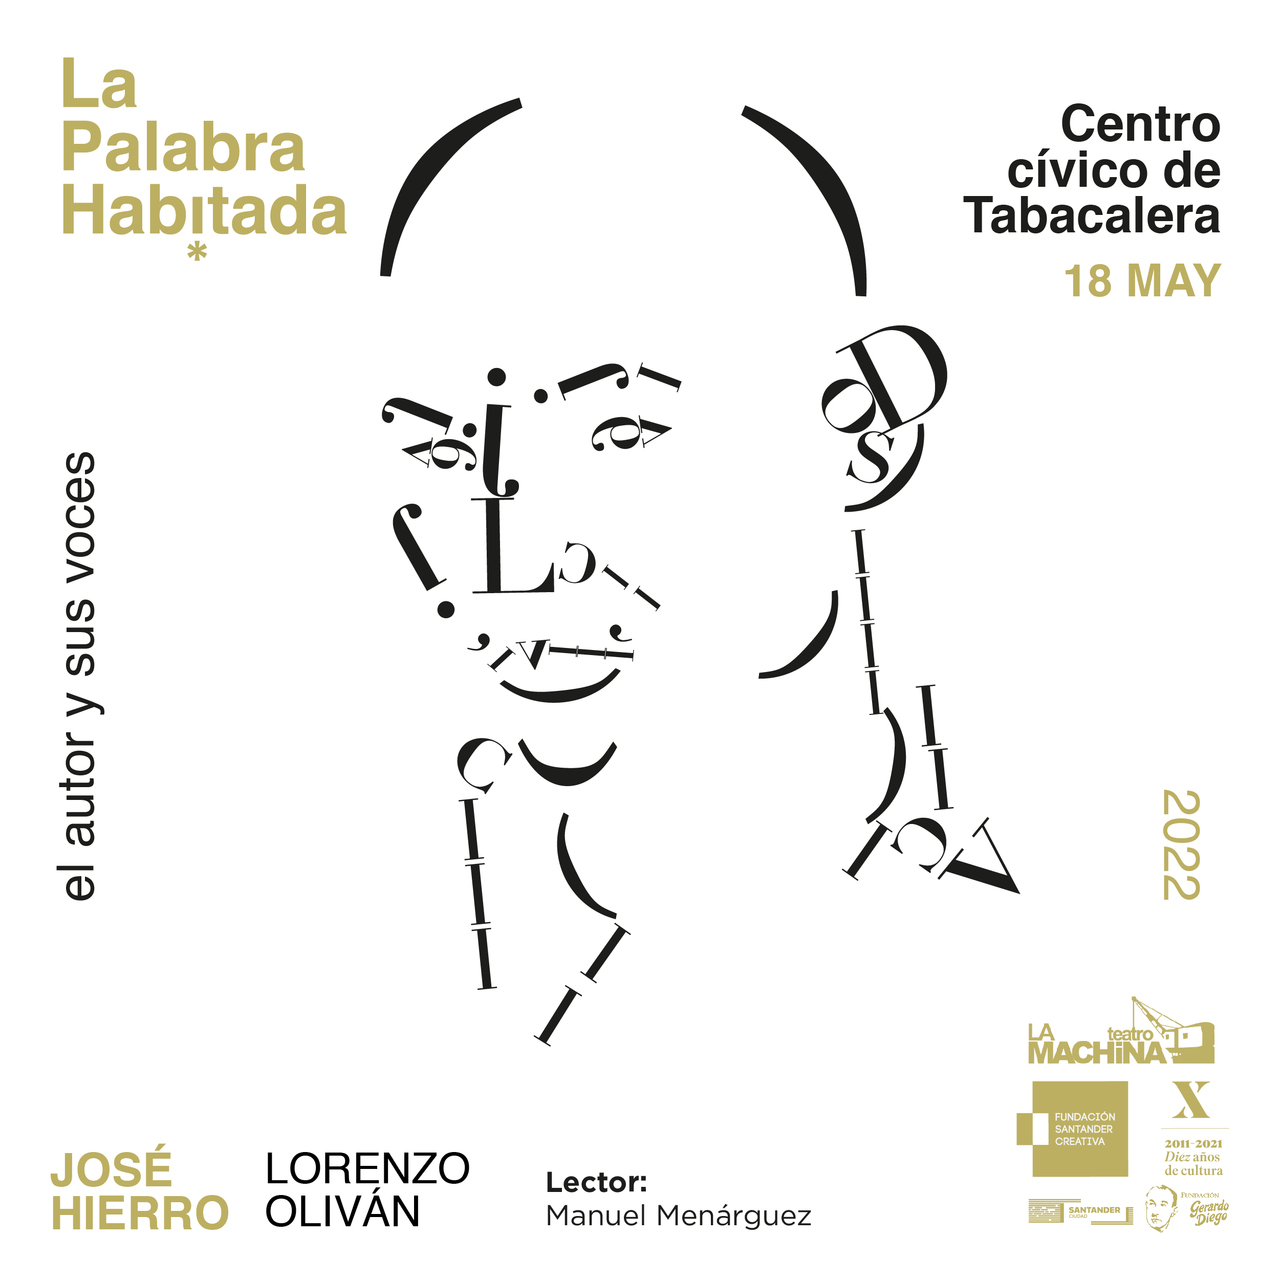 Las invitaciones para la conferencia que el ciclo “La Palabra Habitada” dedicará a José Hierro, disponibles desde este miércoles 4 de mayo